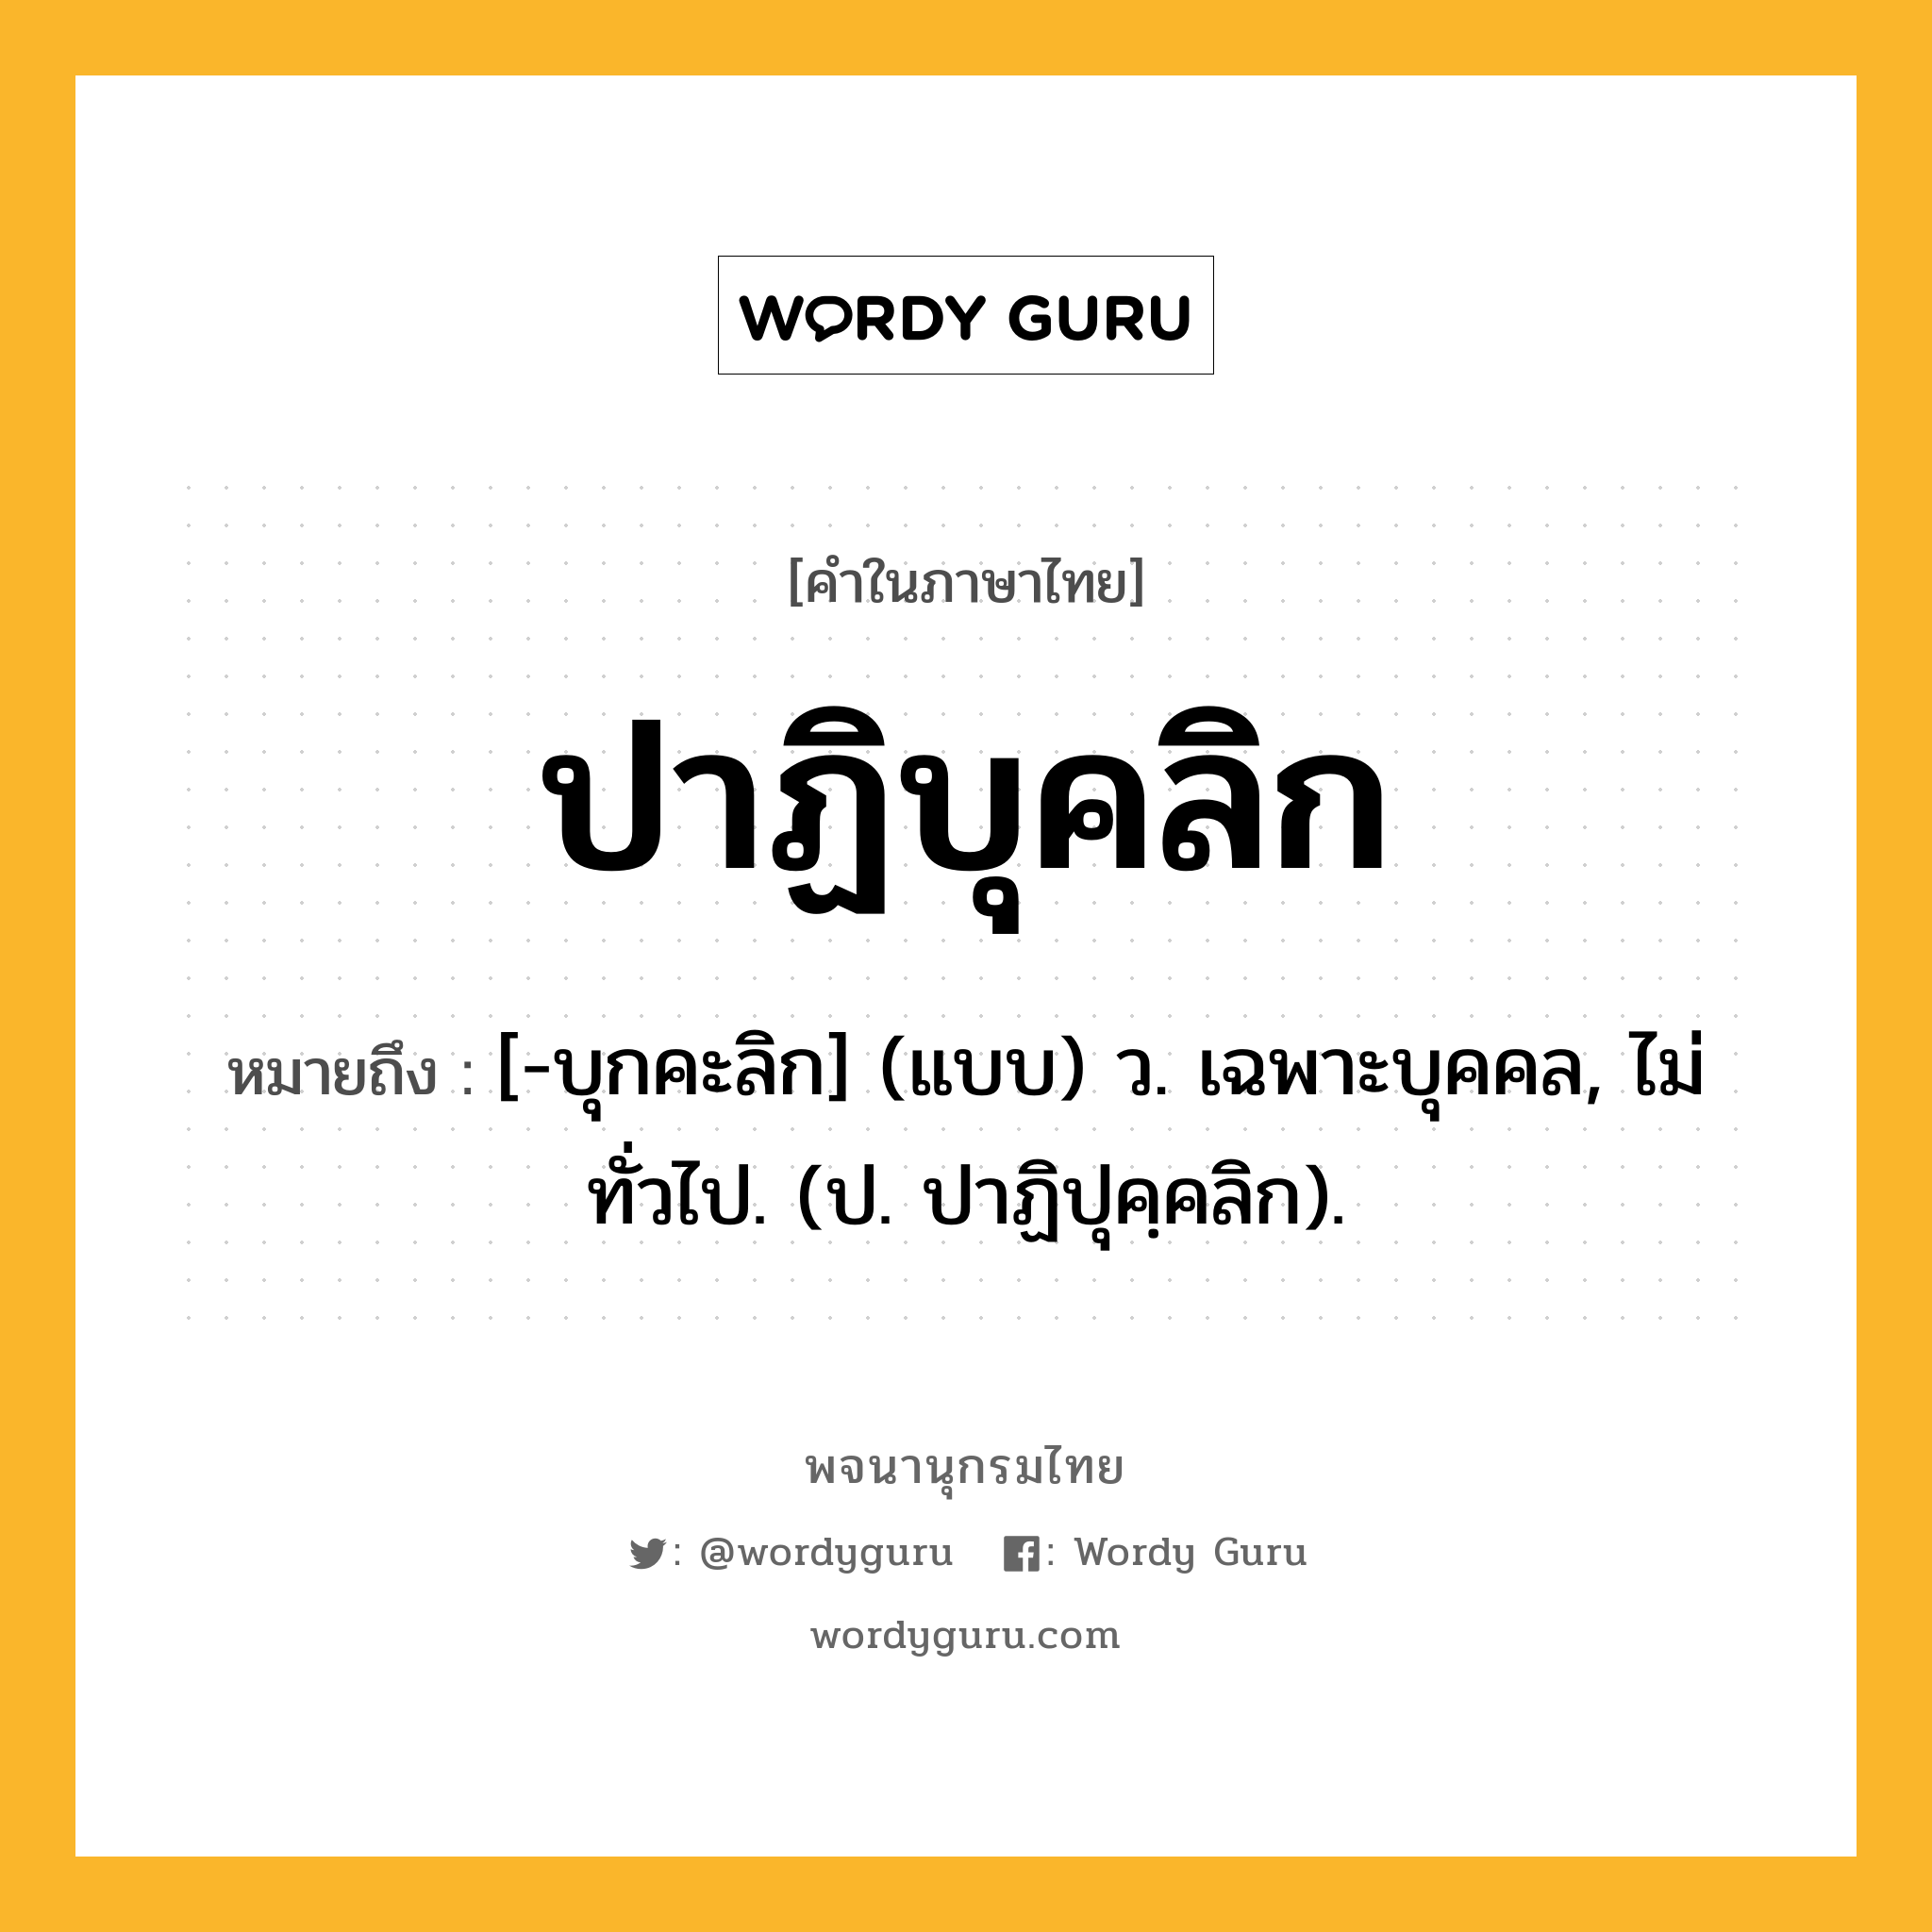 ปาฏิบุคลิก ความหมาย หมายถึงอะไร?, คำในภาษาไทย ปาฏิบุคลิก หมายถึง [-บุกคะลิก] (แบบ) ว. เฉพาะบุคคล, ไม่ทั่วไป. (ป. ปาฏิปุคฺคลิก).